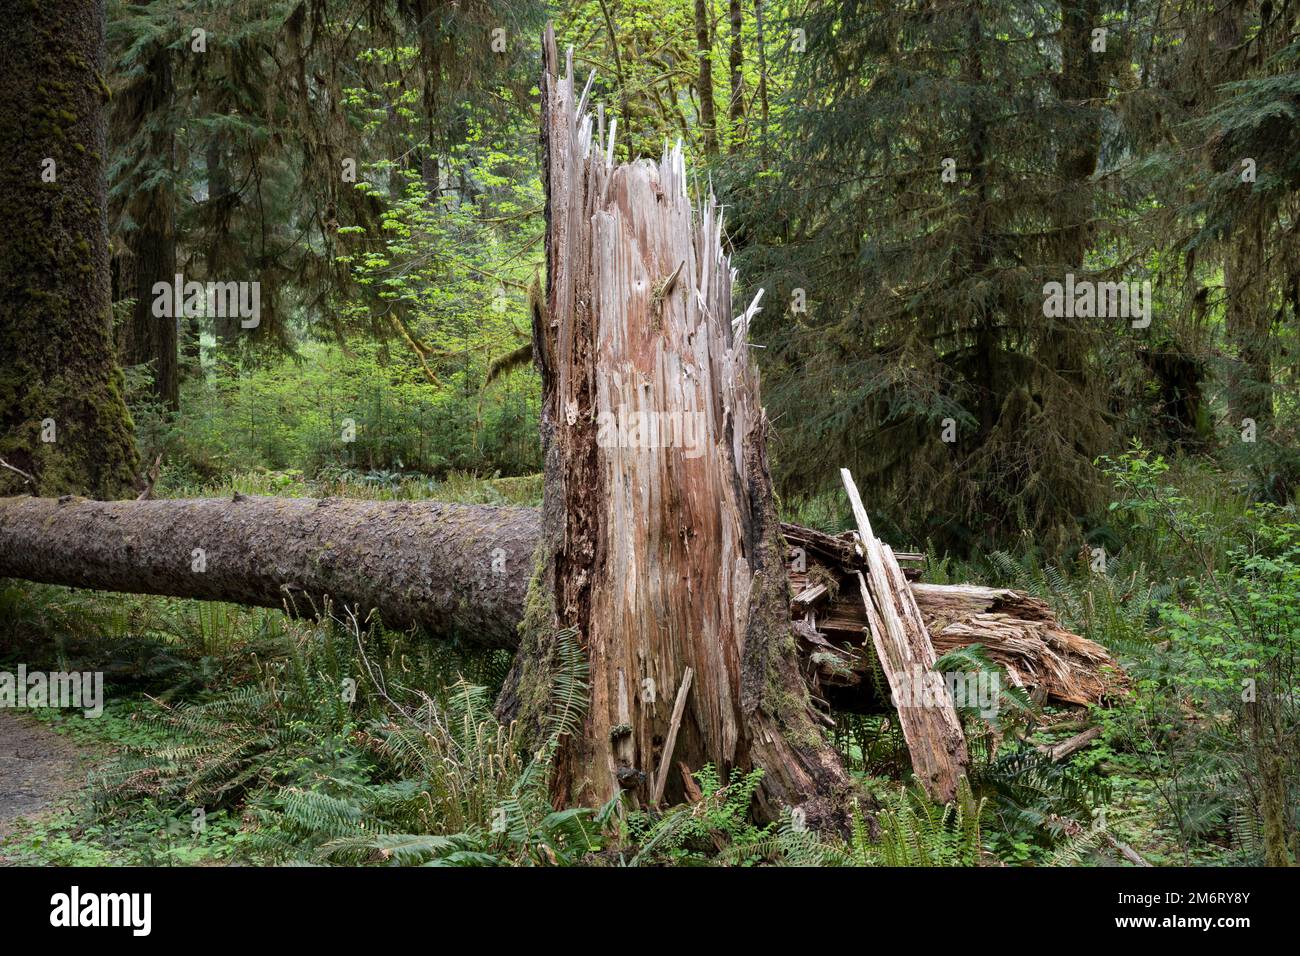 WA20876-00..... WASHINGTON - arbre tombé dans la forêt tropicale de Hoh, parc national olympique. Banque D'Images